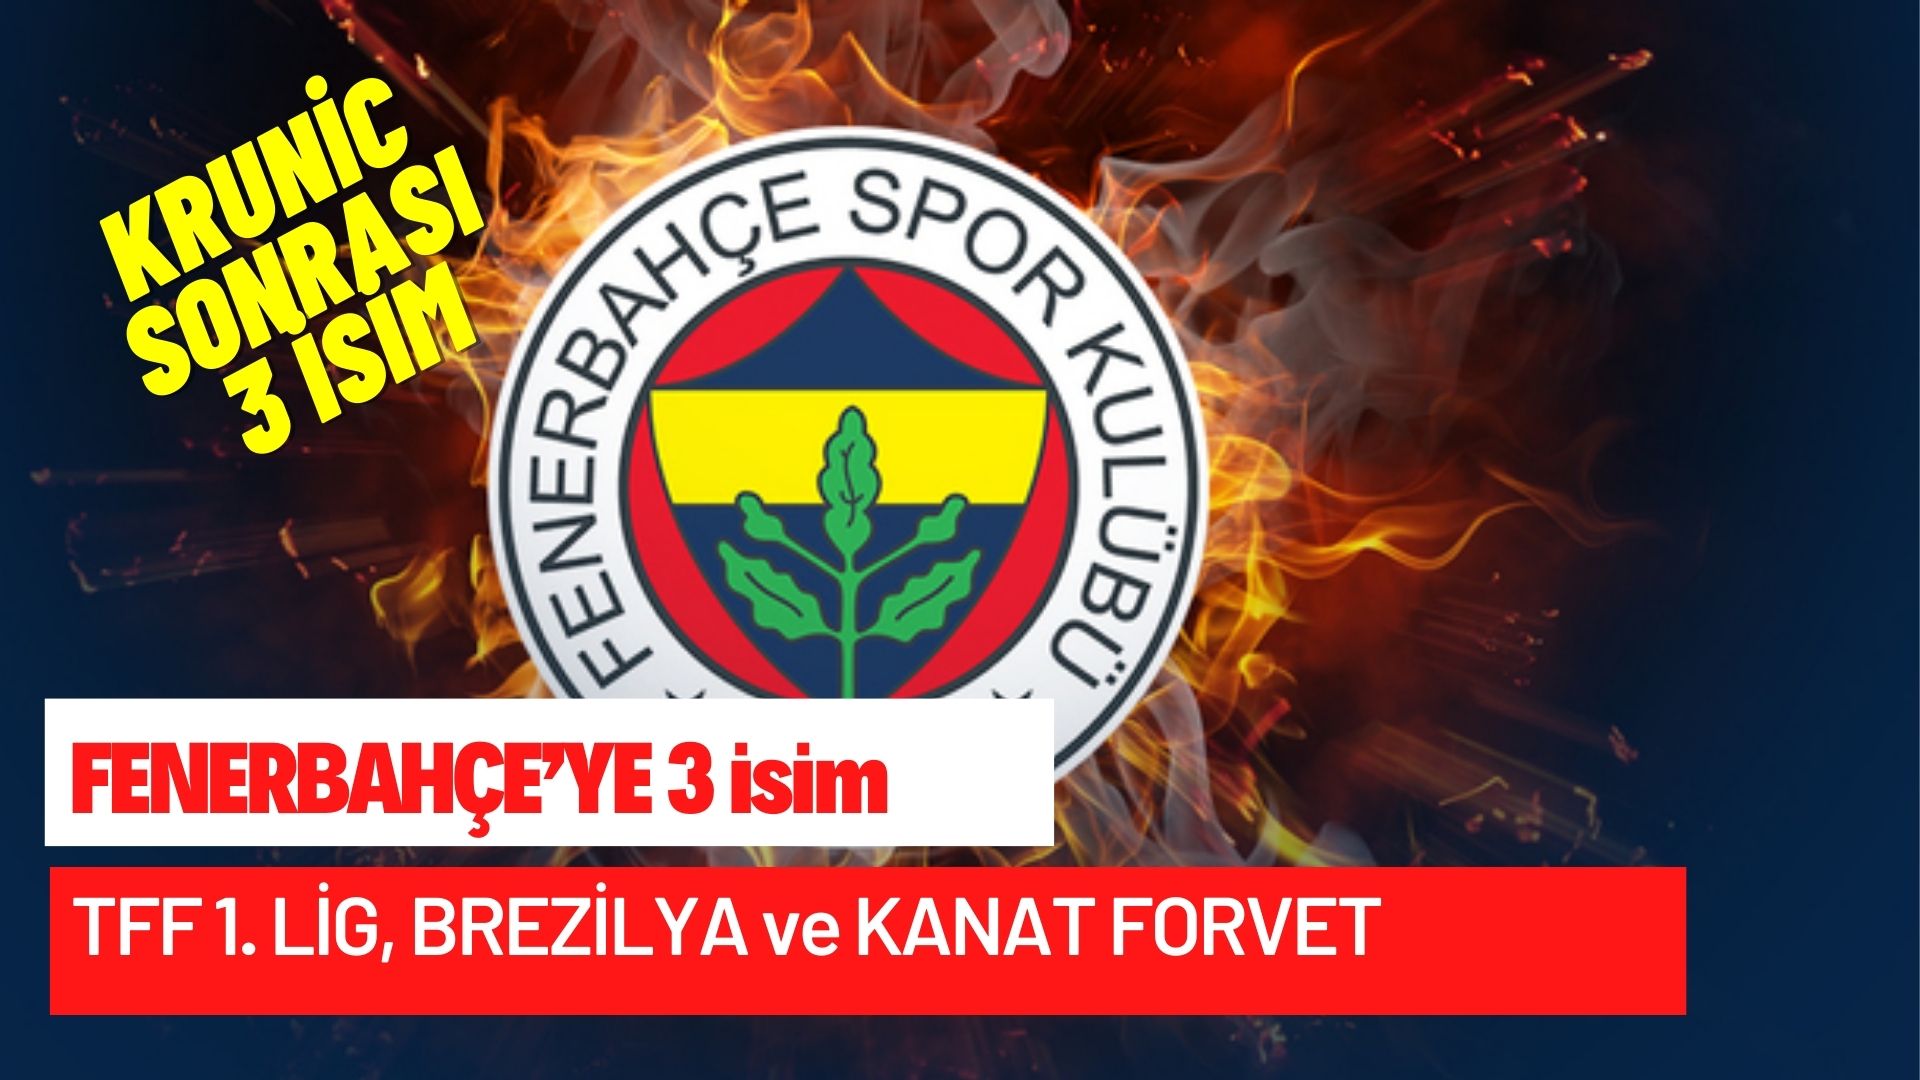 Fenerbahçe’de transfer bitmiyor! Ligden Türk sol stoper, yabancı stoper ve kanat forvet geliyor